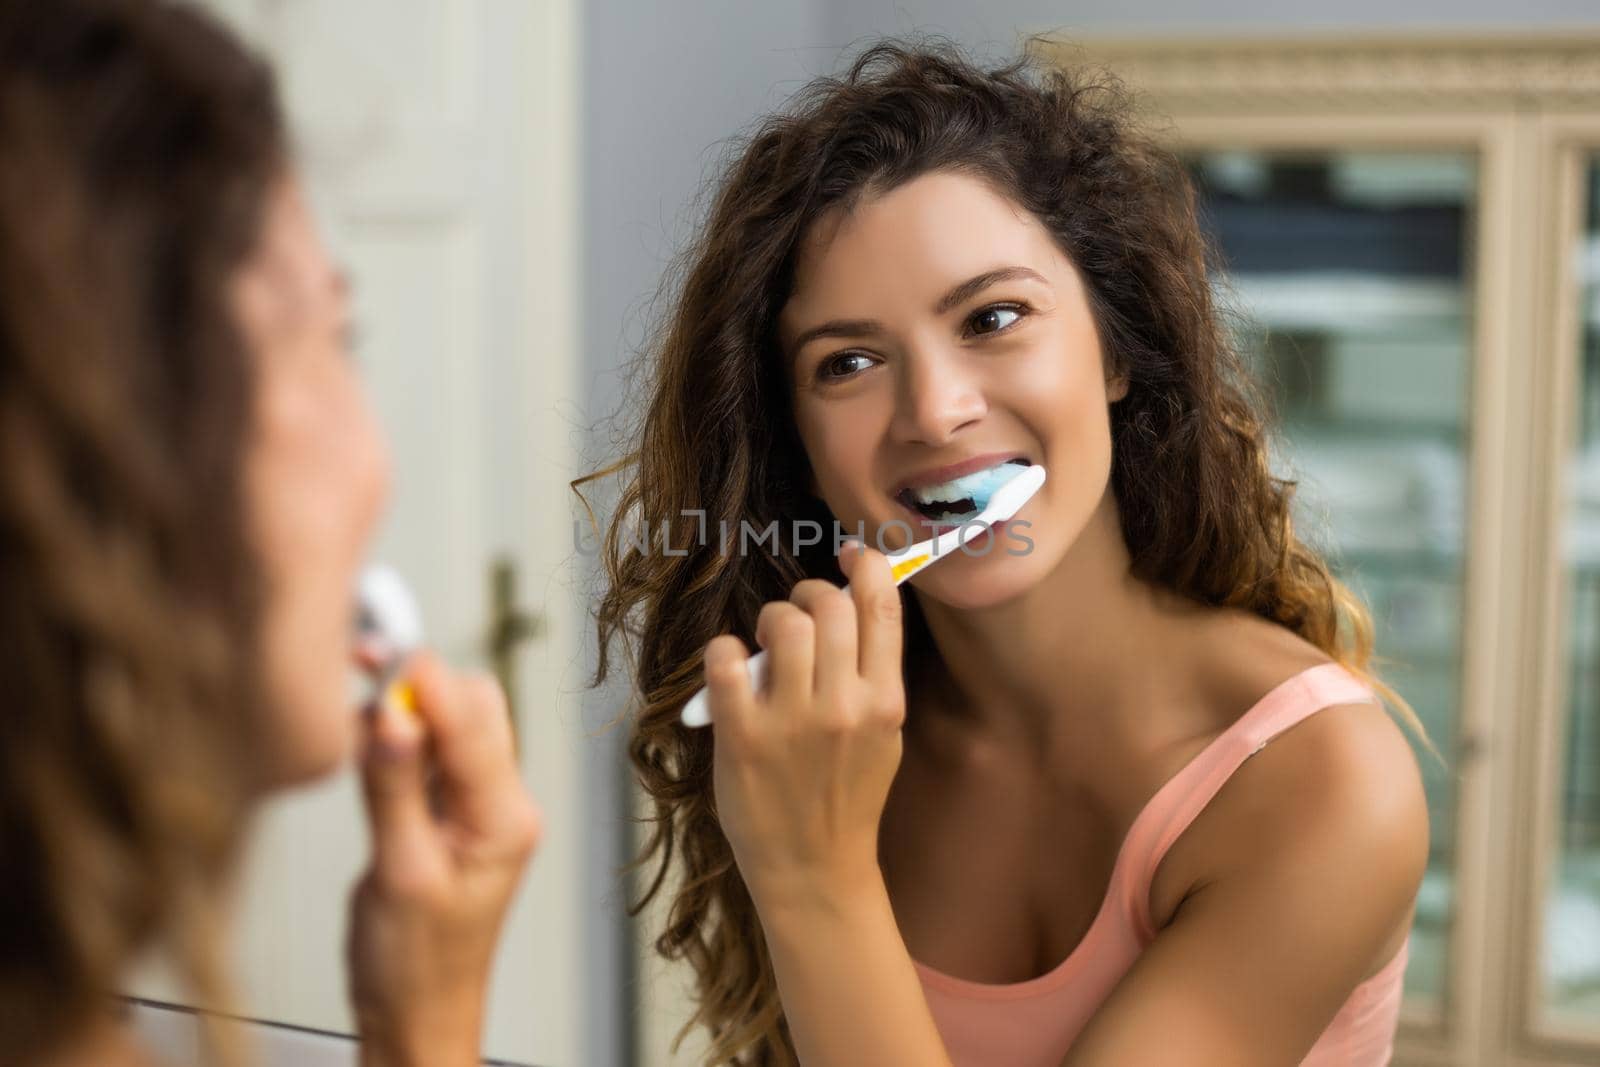 Beautiful woman brushing teeth in the bathroom.